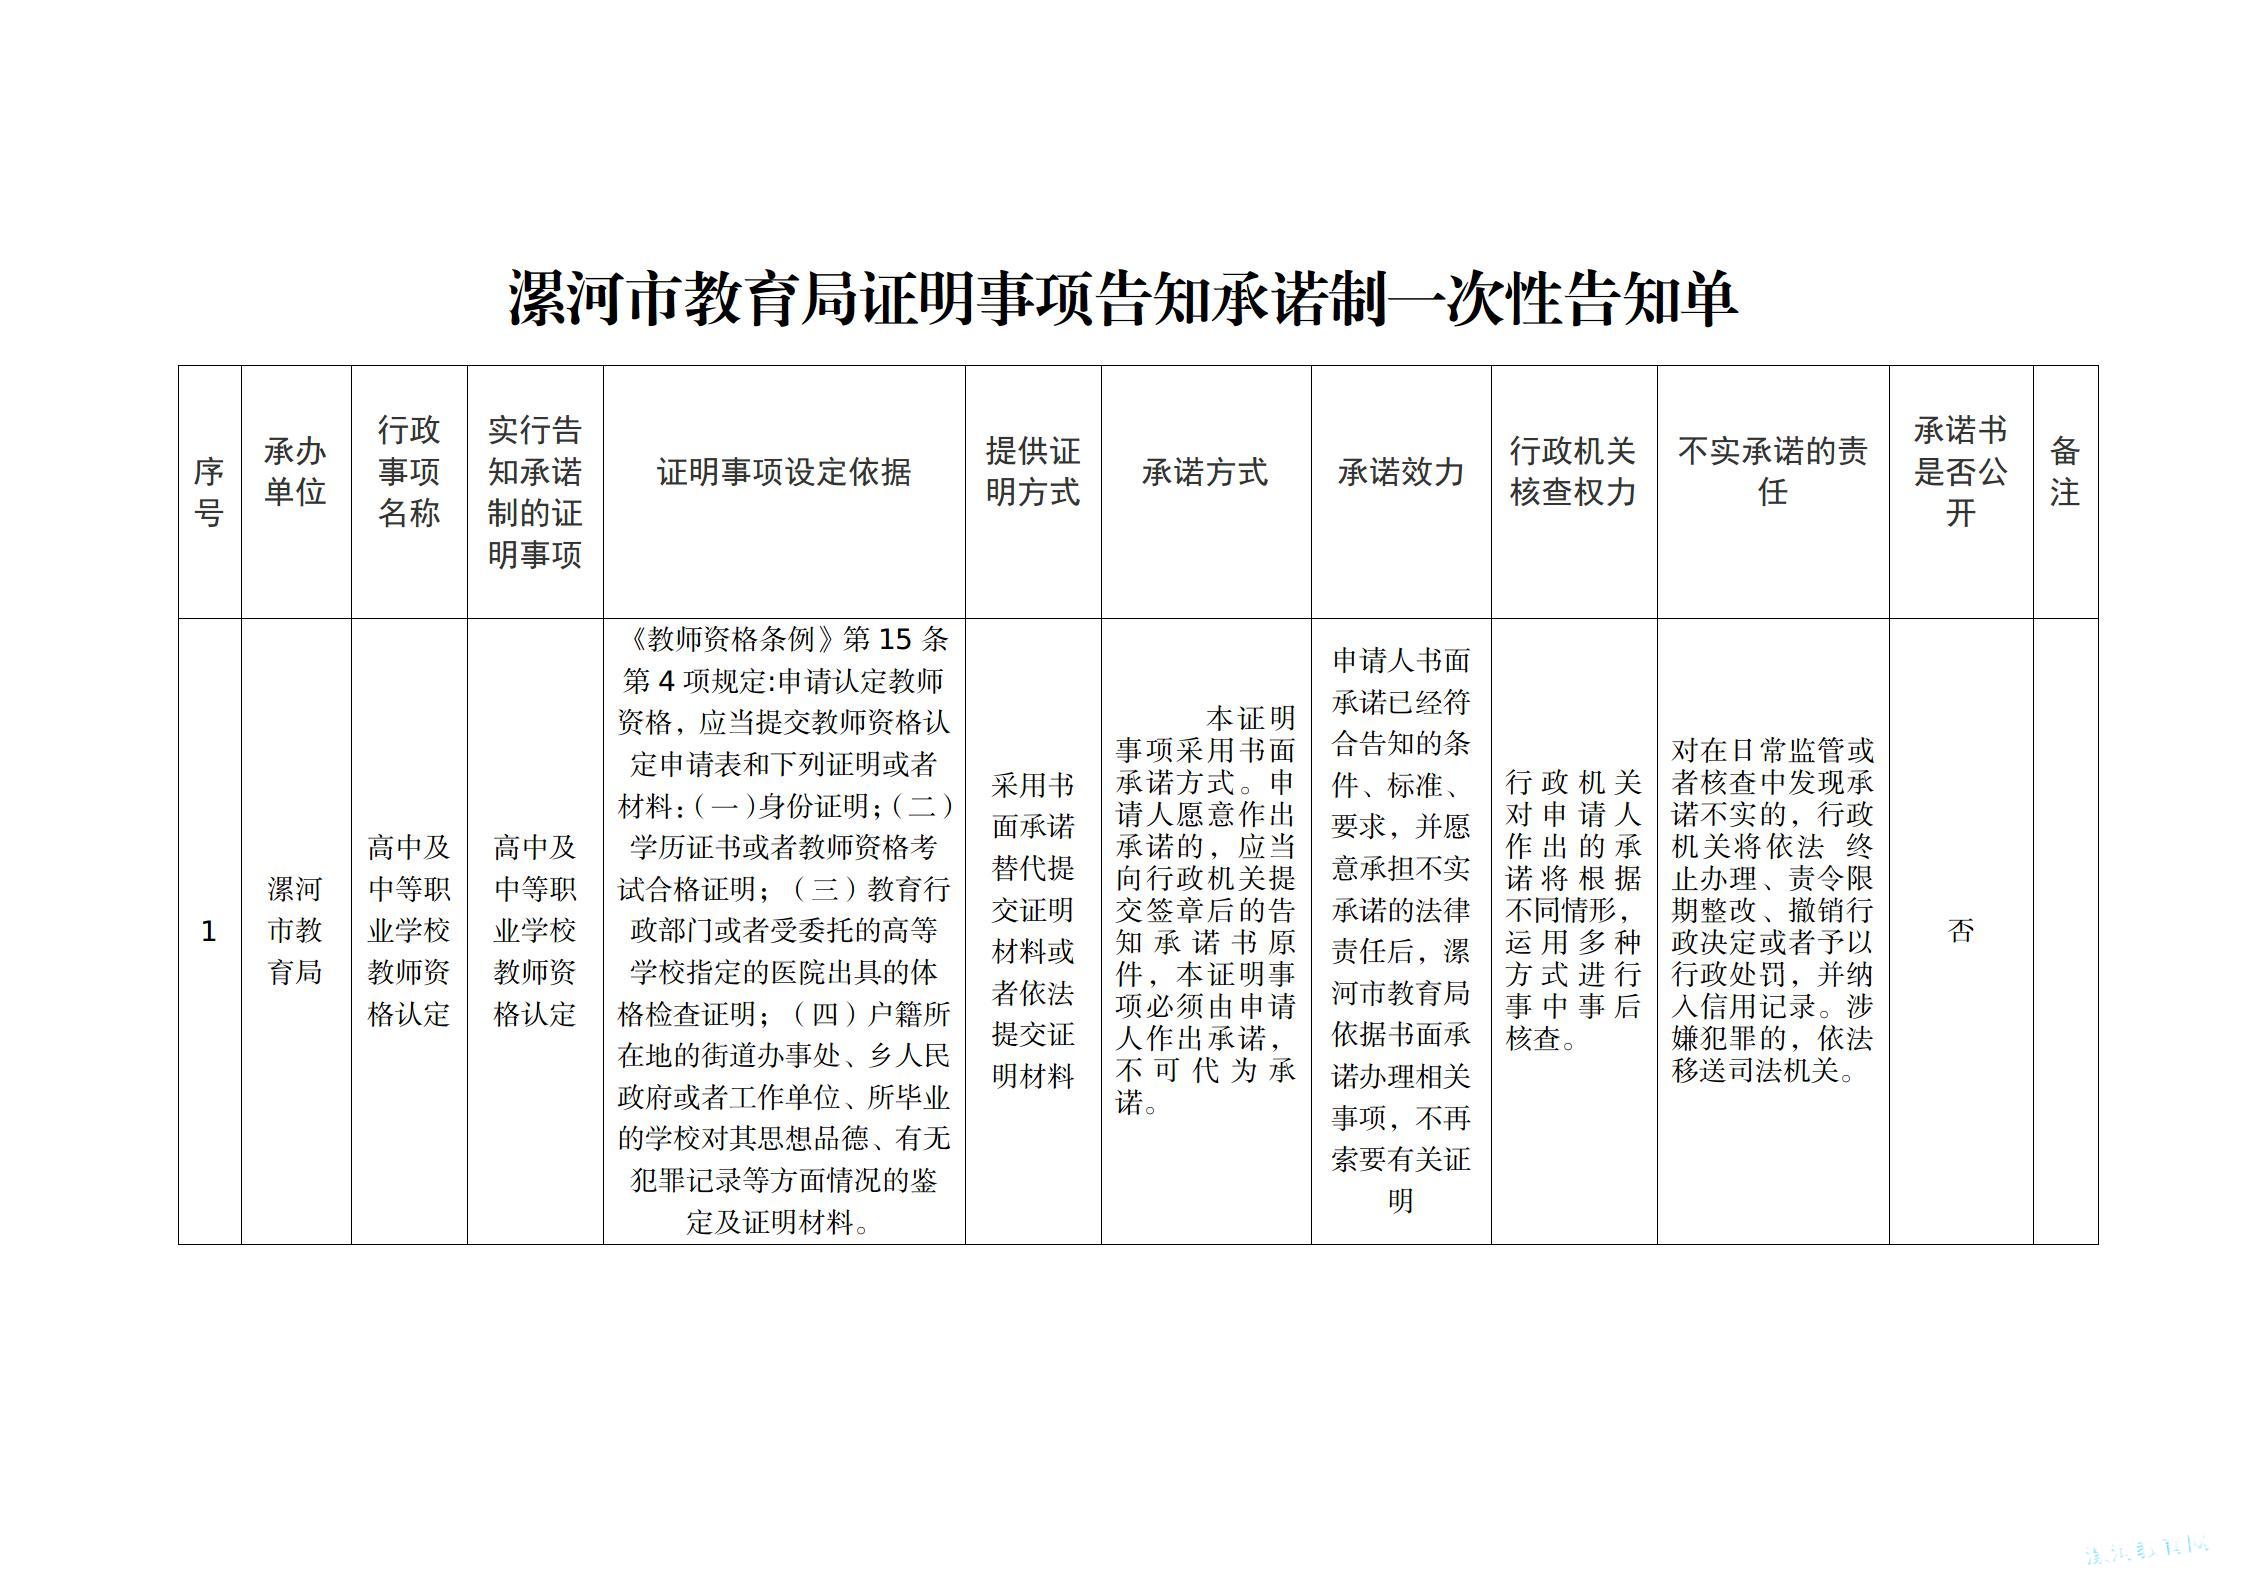 漯河市教育局证明事项告知承诺制一次性告知单_01.jpg